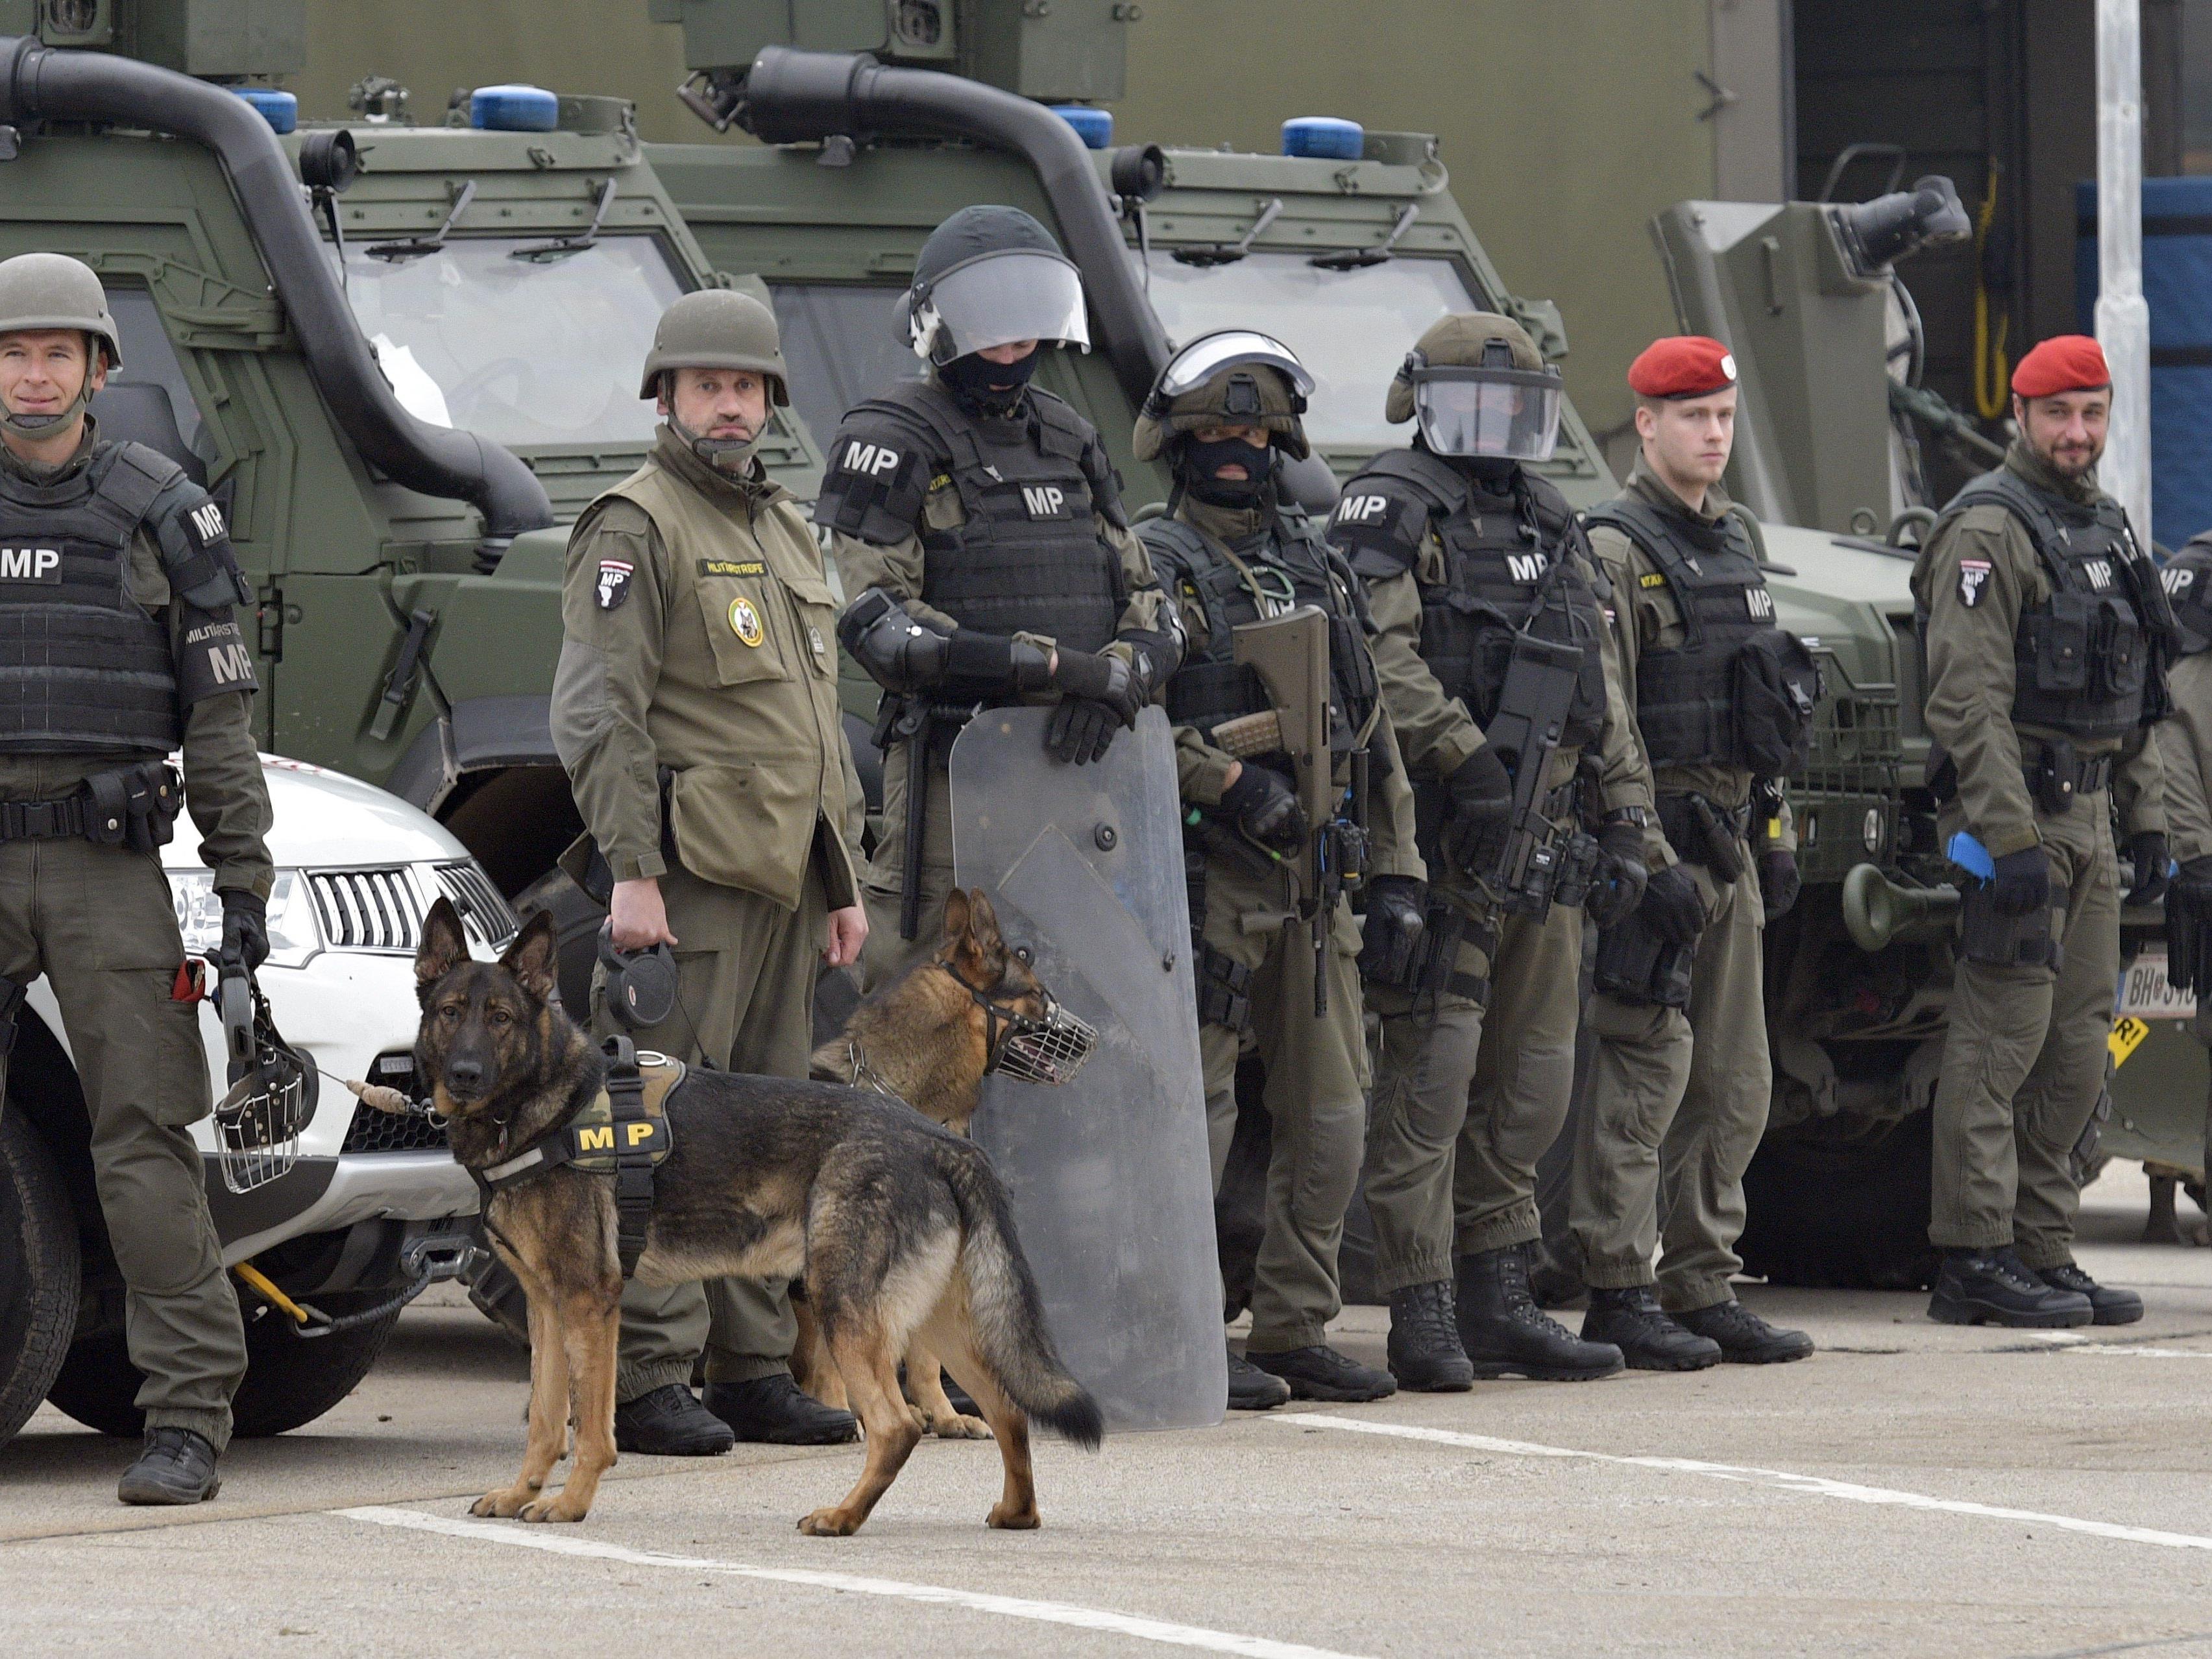 Knapp 300 Jihadisten stehen in Österreich unter Beobachtung (Bild: Einsatzkräfte bei der AEGIS 16-Übung)